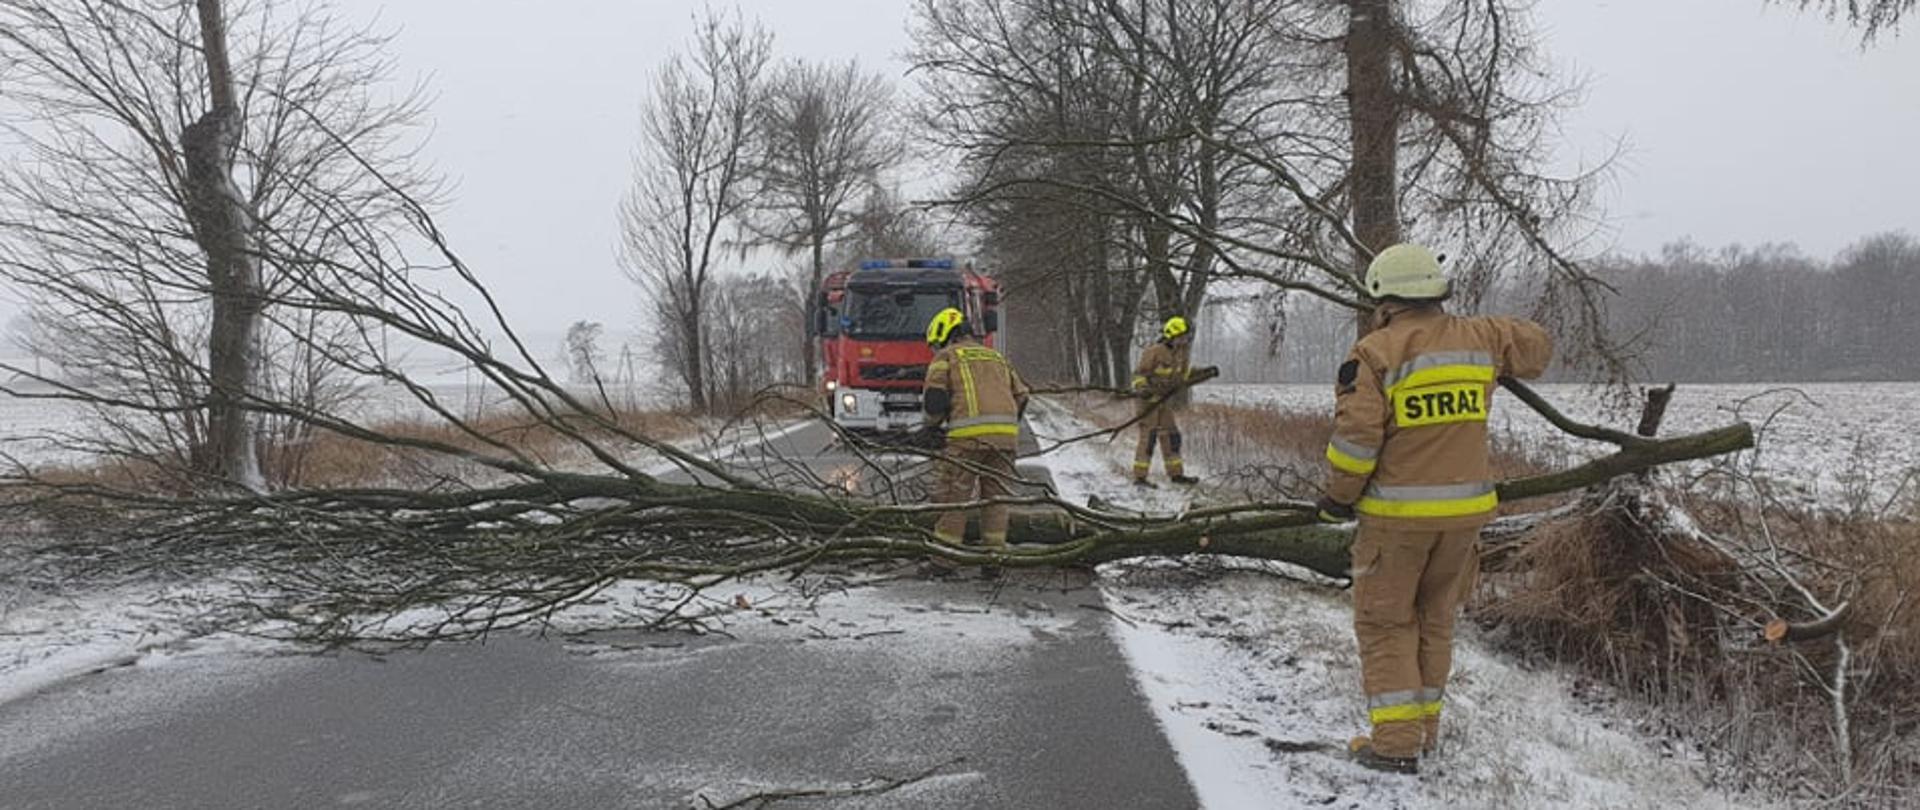 Strażacy OSP w piaskowych ubraniach specjalnych w białych hełmach usuwają przewrócone drzewo w poprzek drogi. Pobocze zawiane sypkim śniegiem. W tle stoi czerwony samochód ratowniczo-gaśniczy.